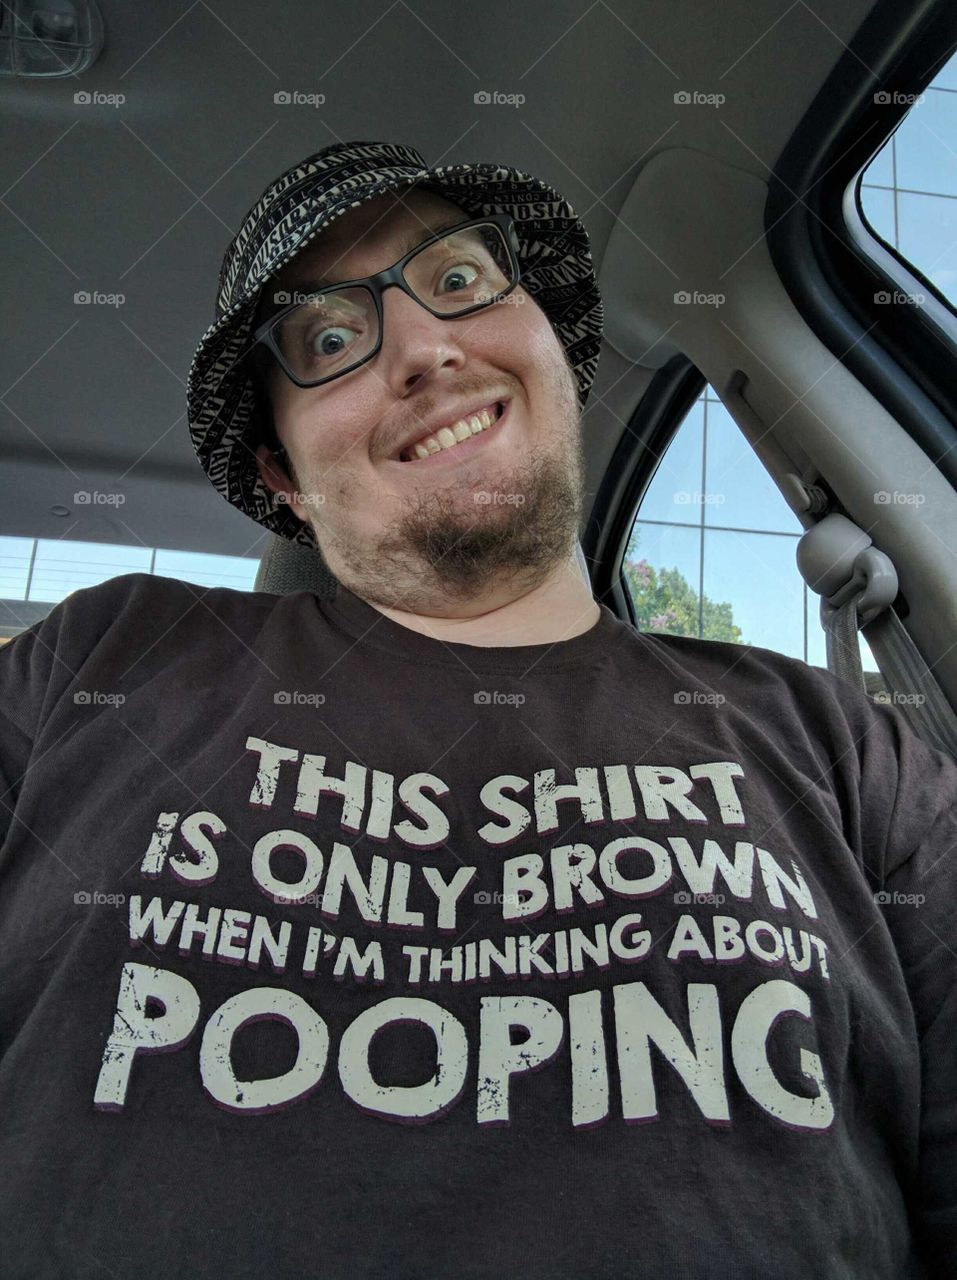 goofy selfie in a goofy shirt